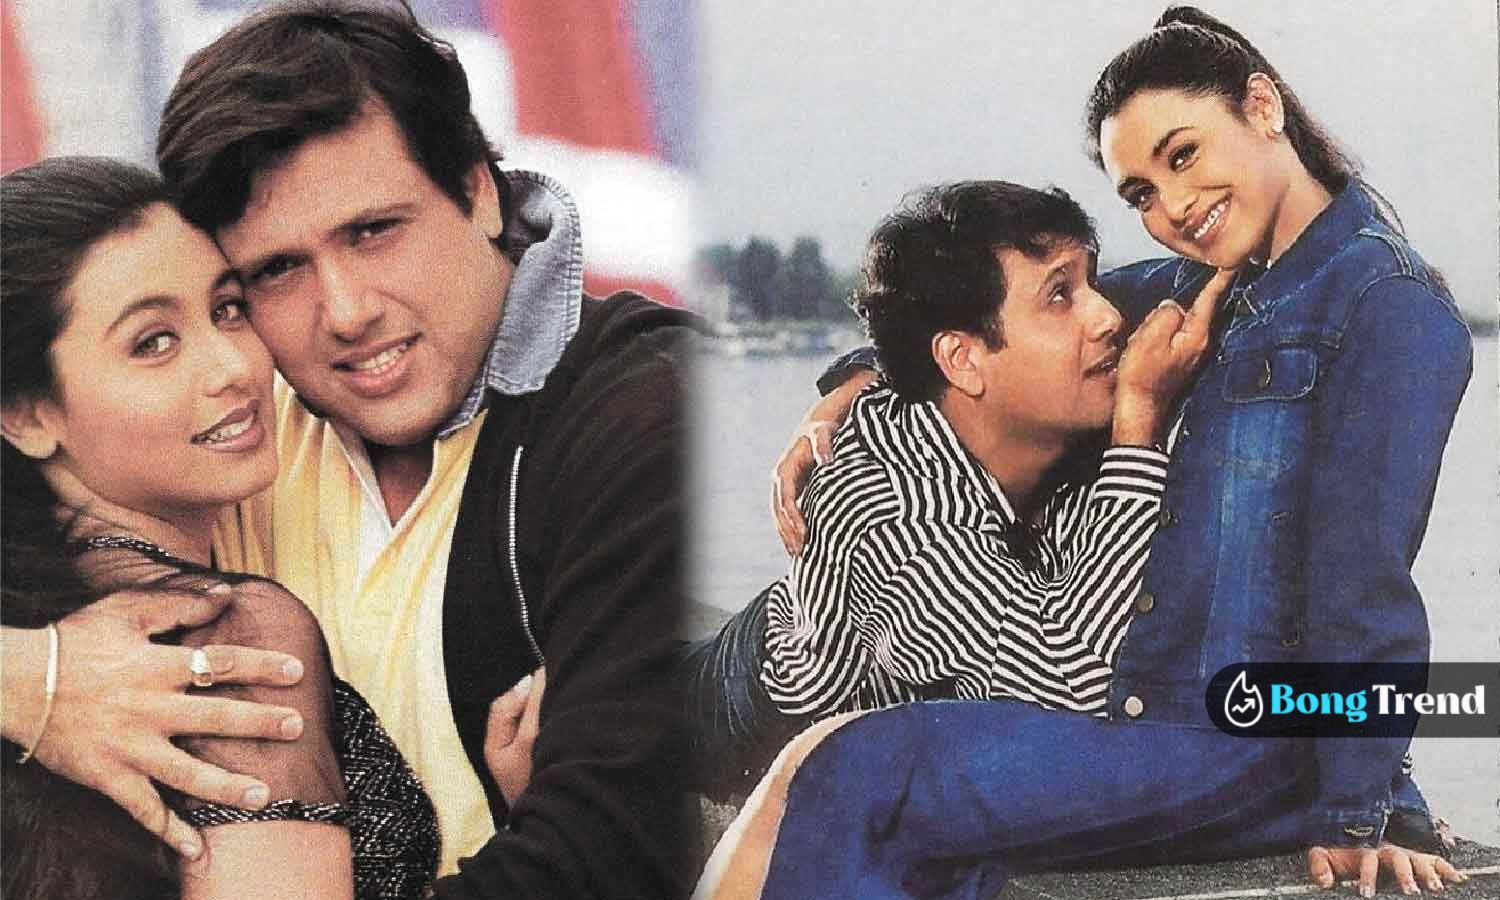 Bollywood Govinda with Rani Mukherjee গোবিন্দা রানী মুখার্জী